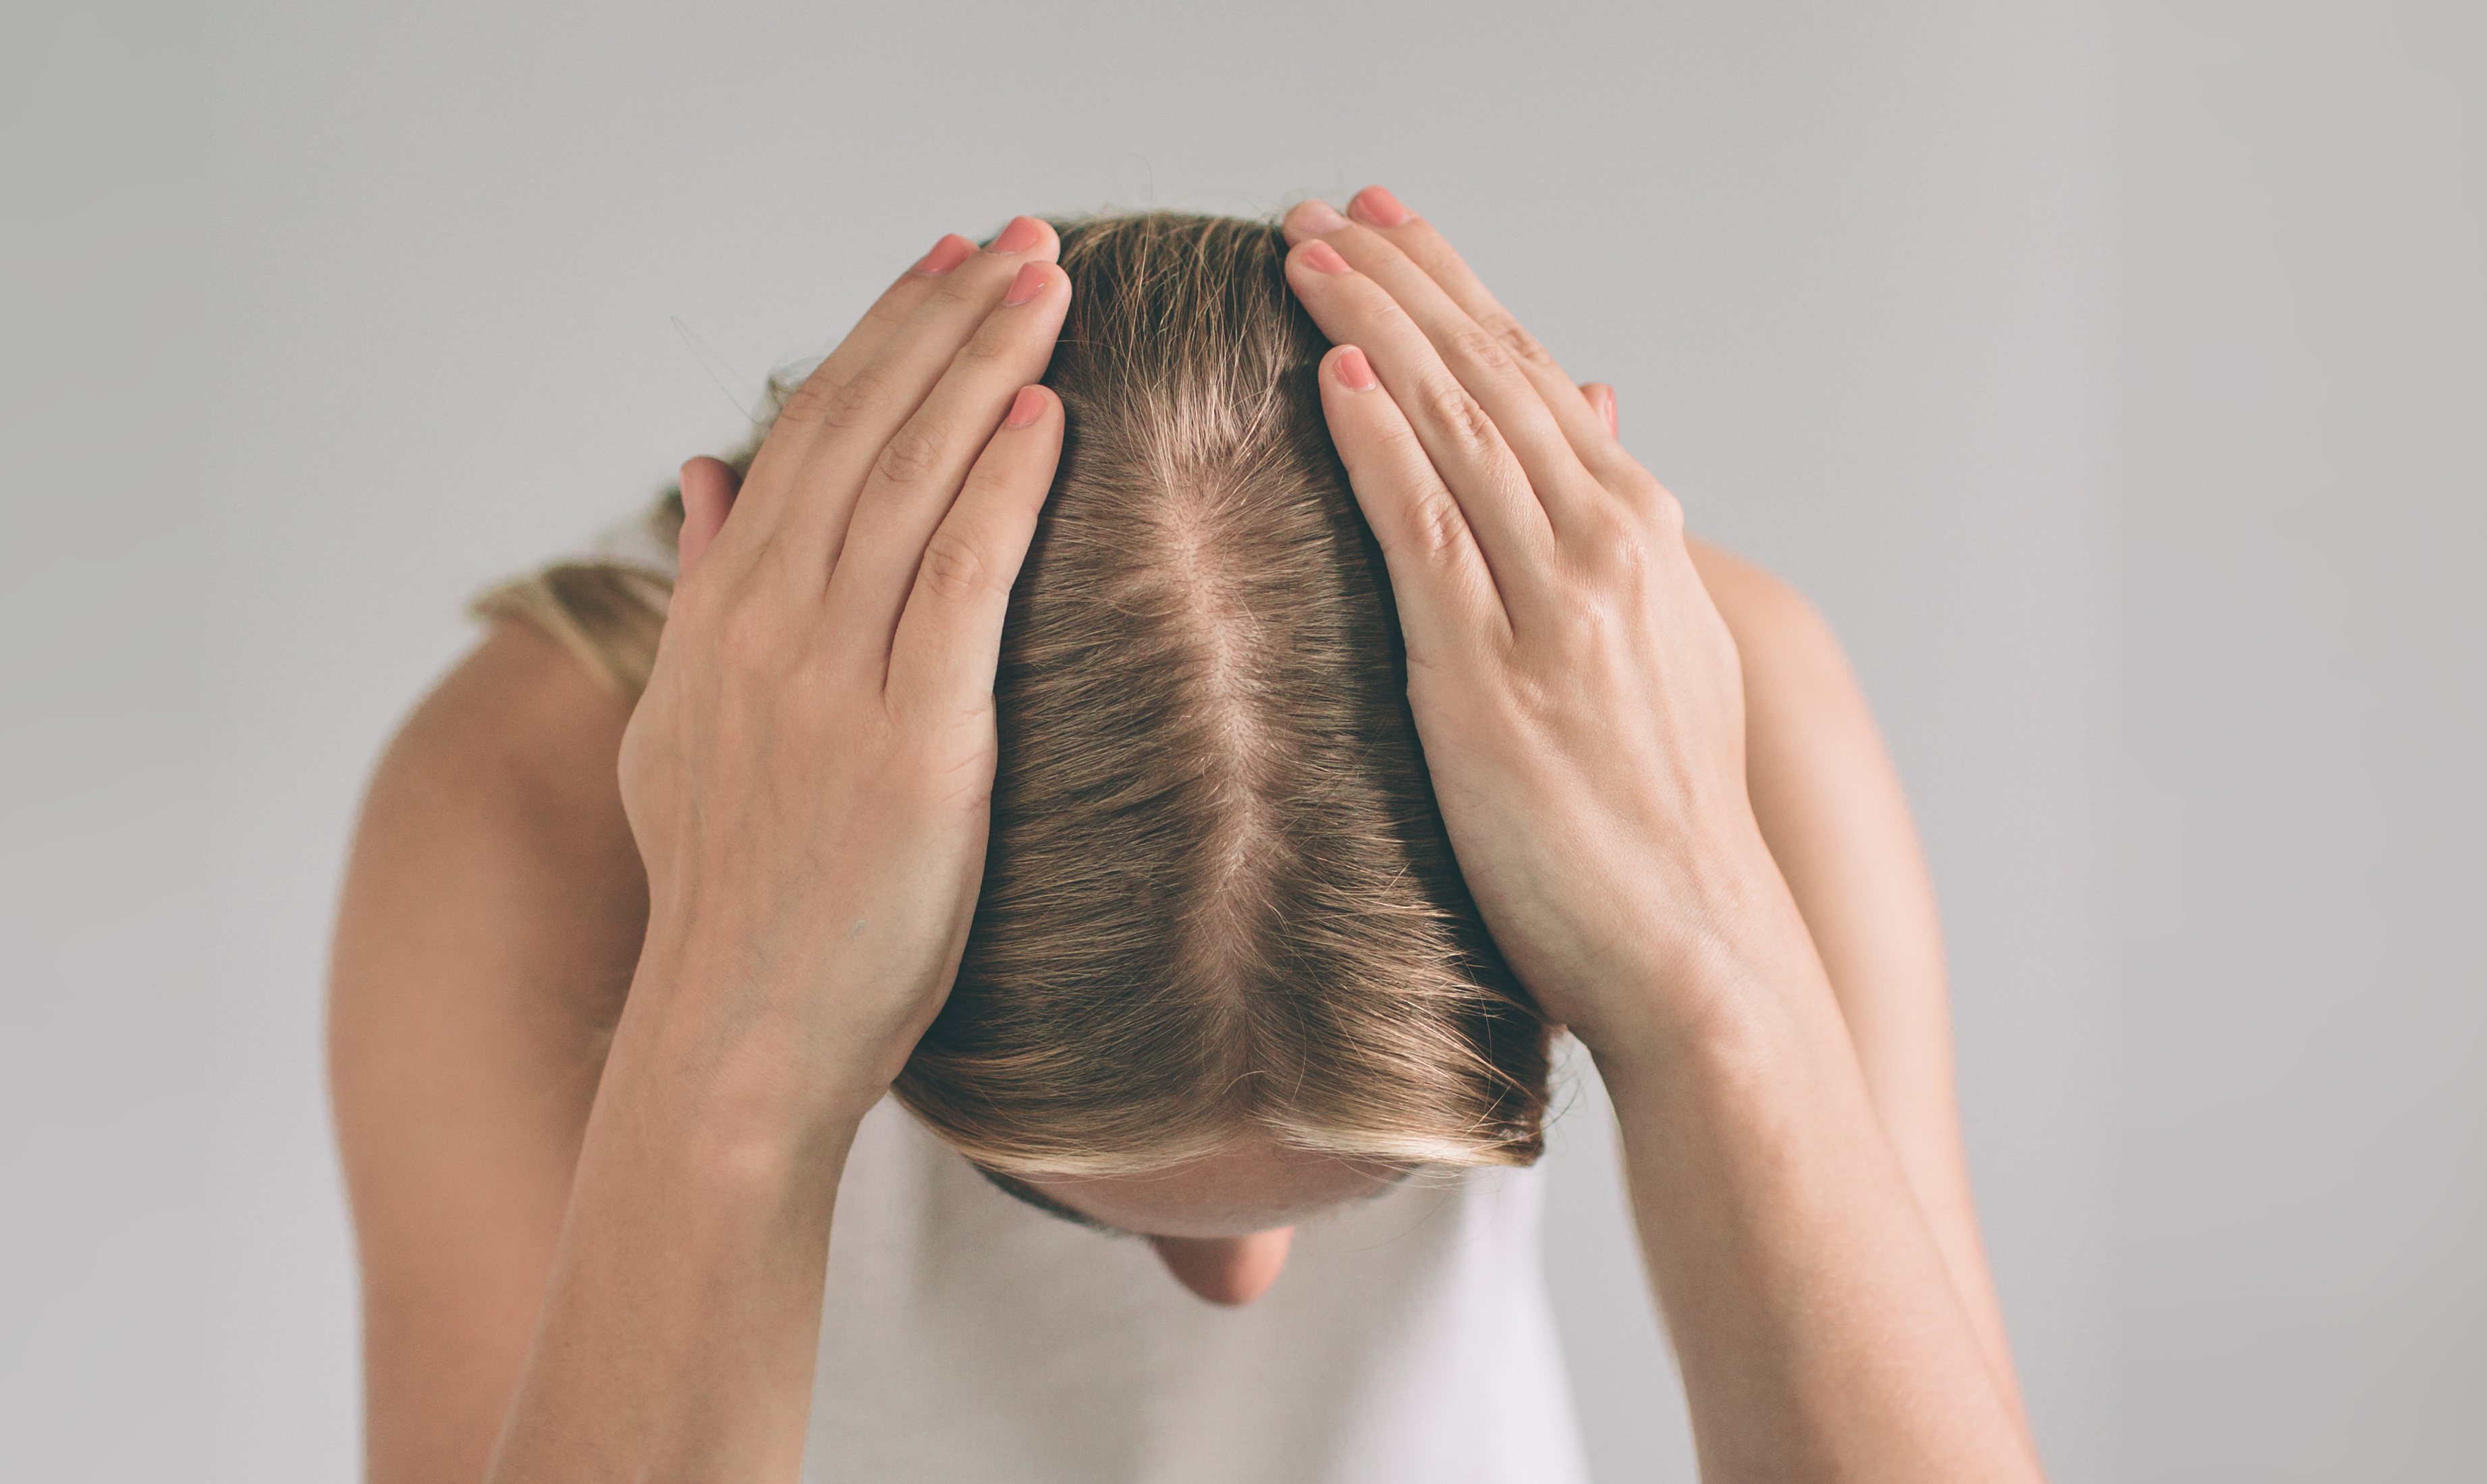 La caída del pelo se puede producir por falta de vitaminas